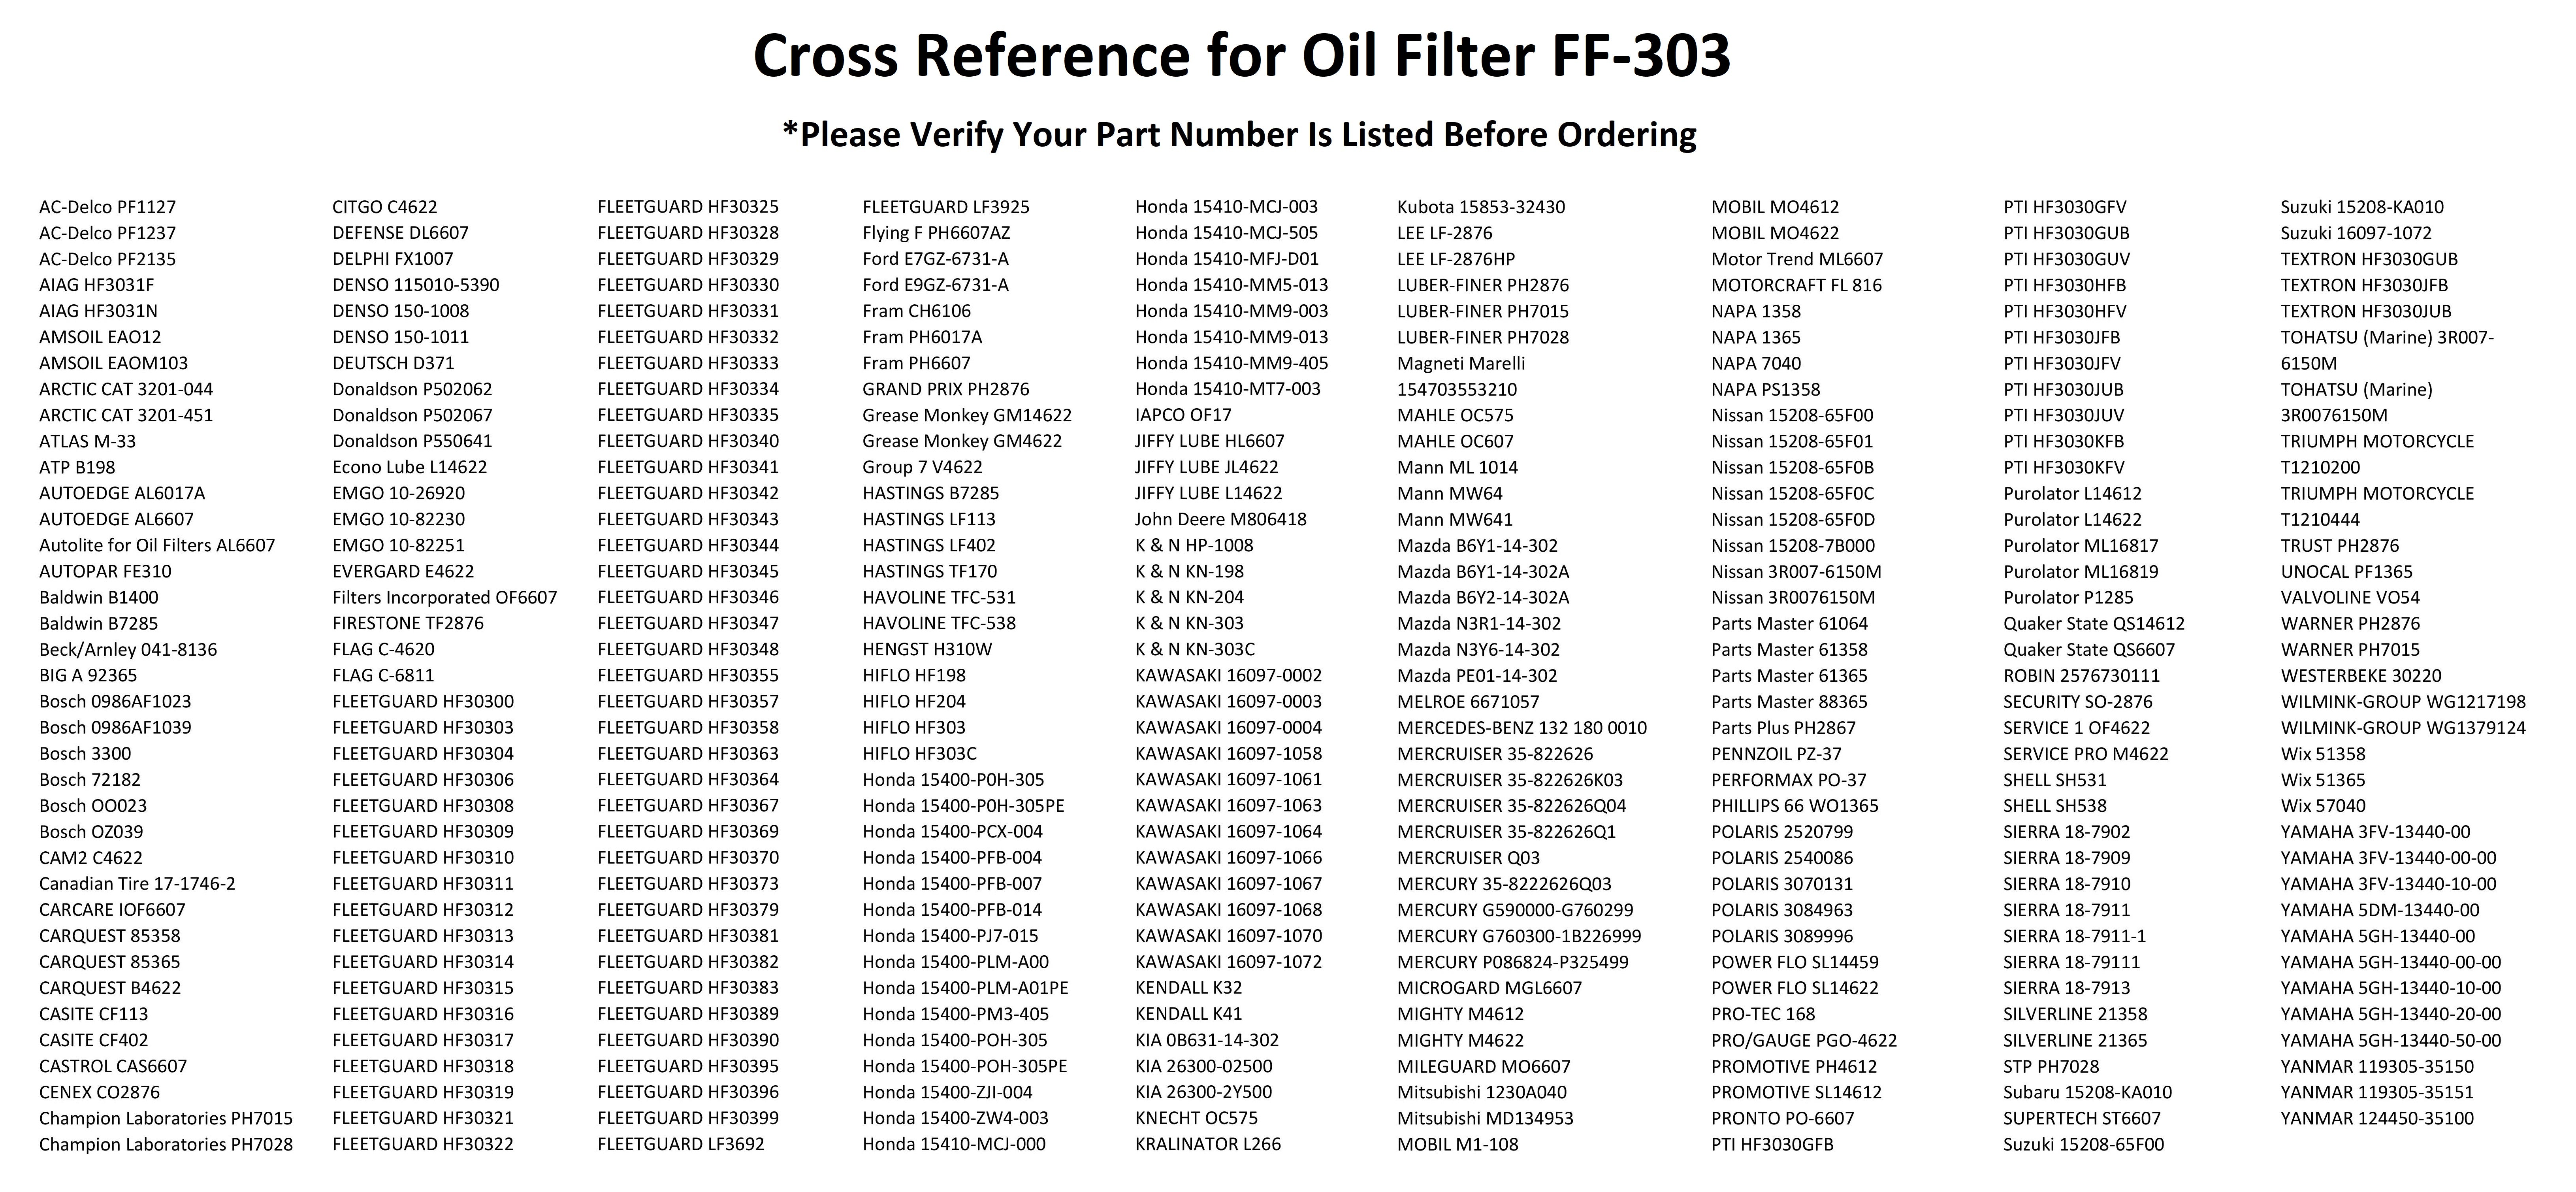 kawasaki-motorcycle-oil-filter-cross-reference-chart-reviewmotors-co